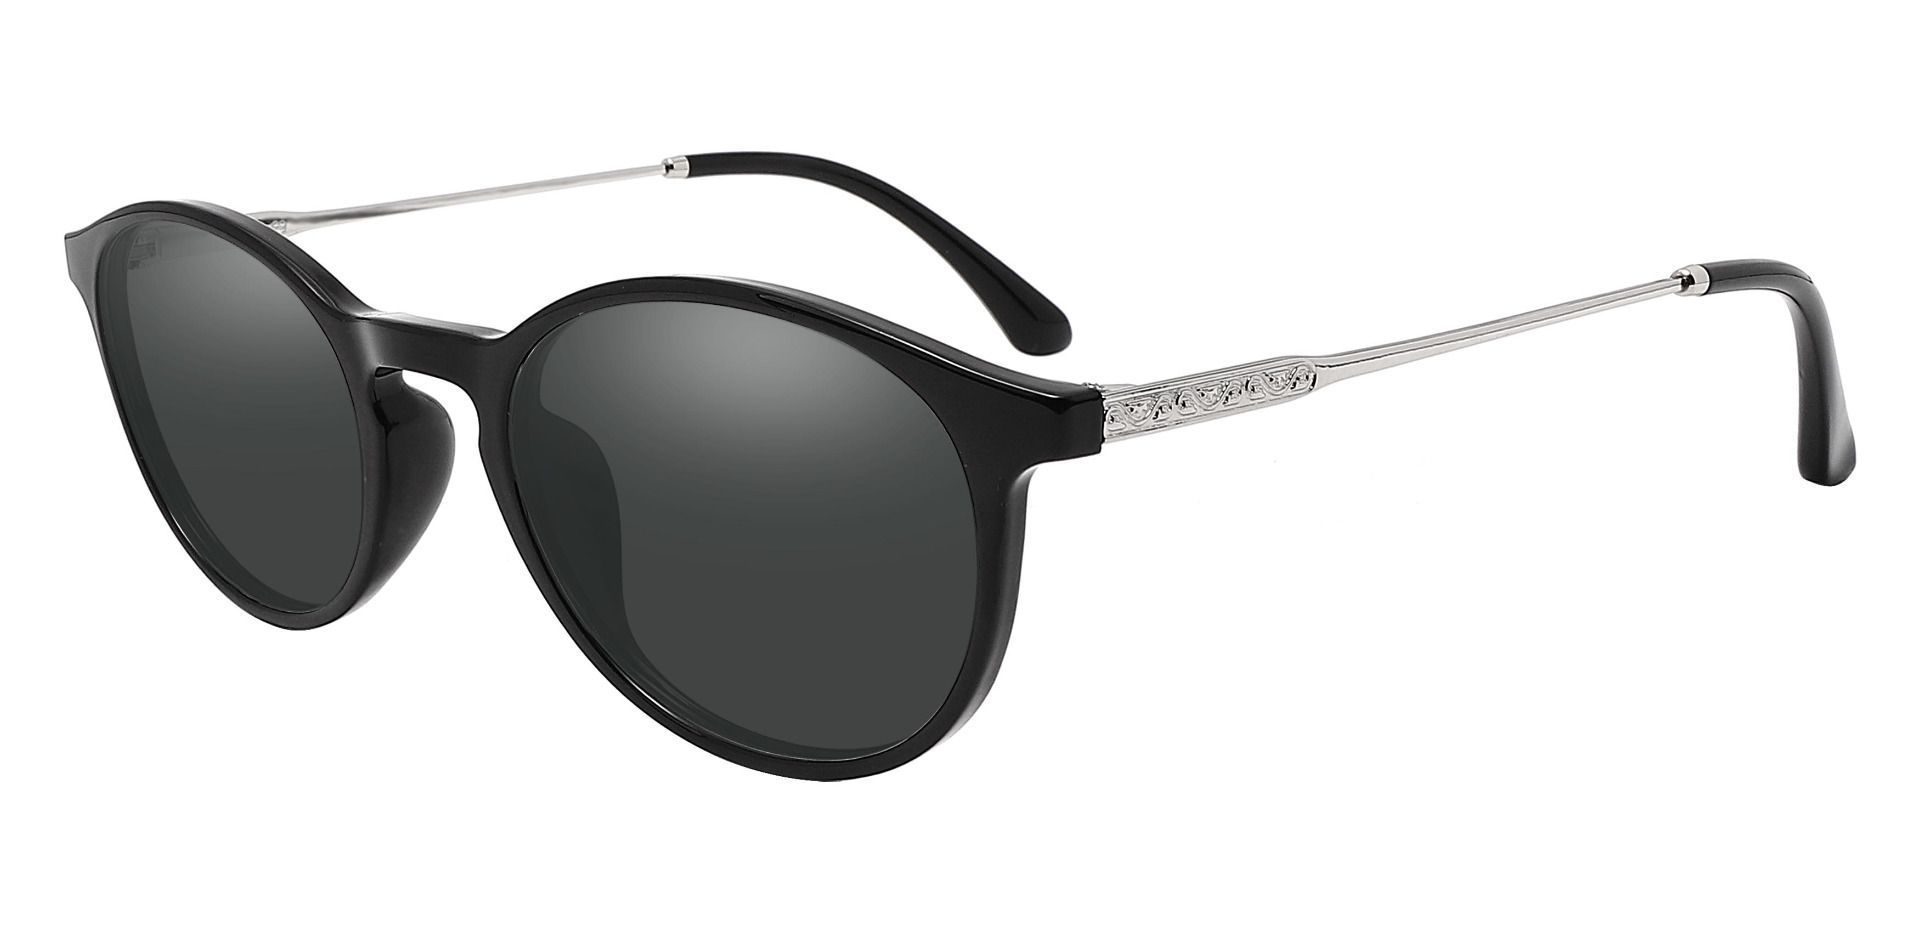 Felton Oval Reading Sunglasses - Black Frame With Gray Lenses